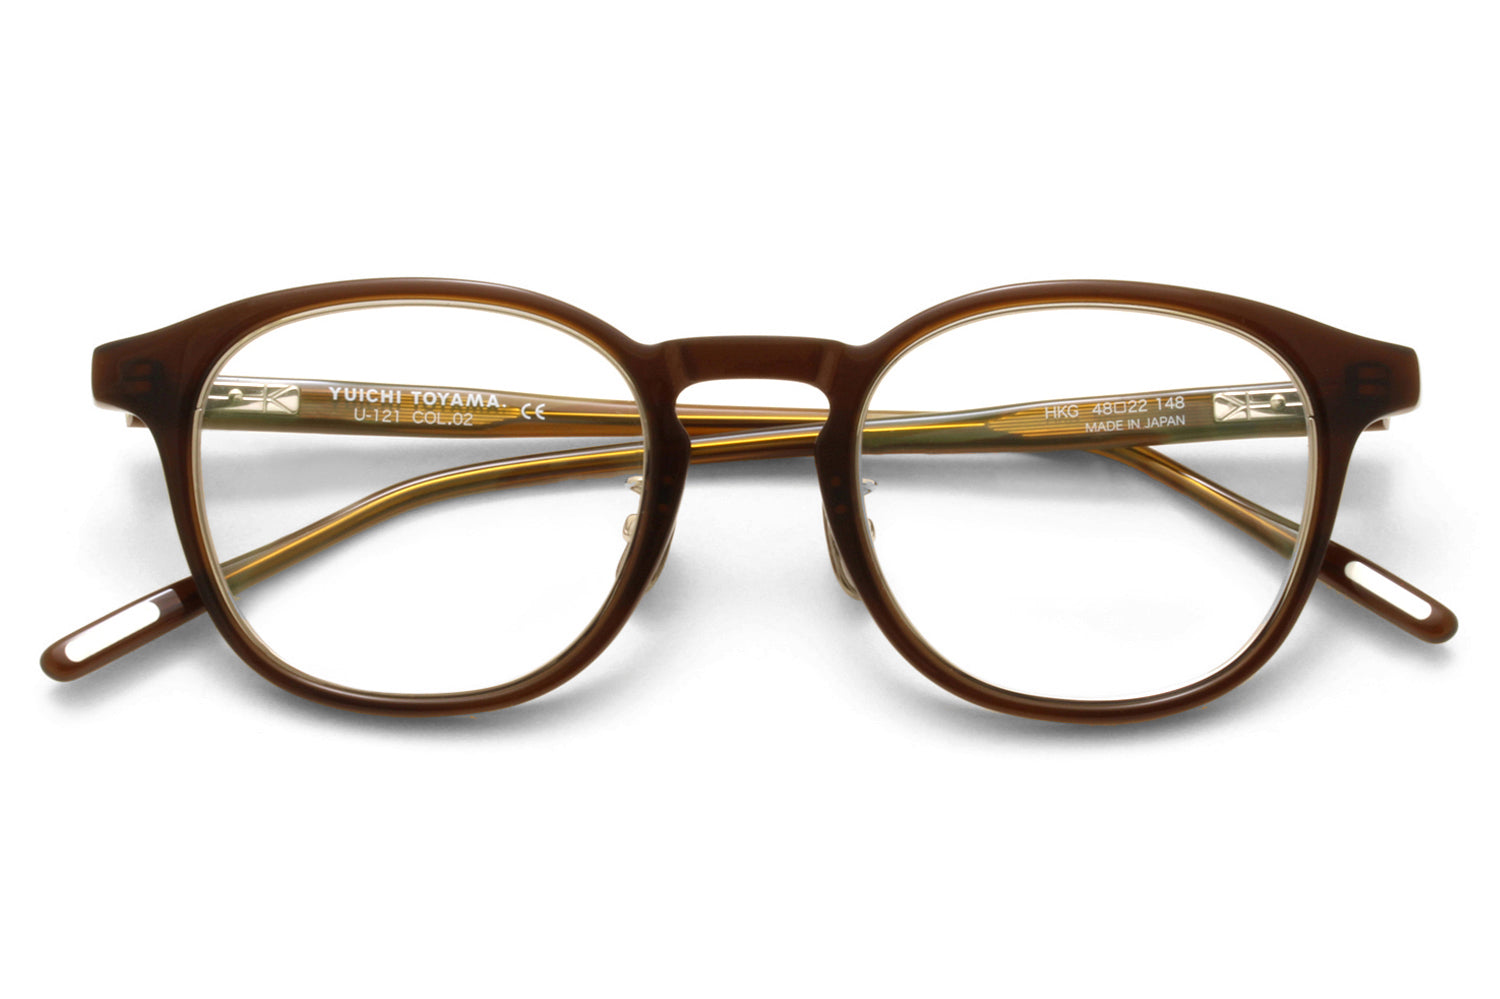 Yuichi Toyama - HKG (U-121) Eyeglasses | Specs Collective